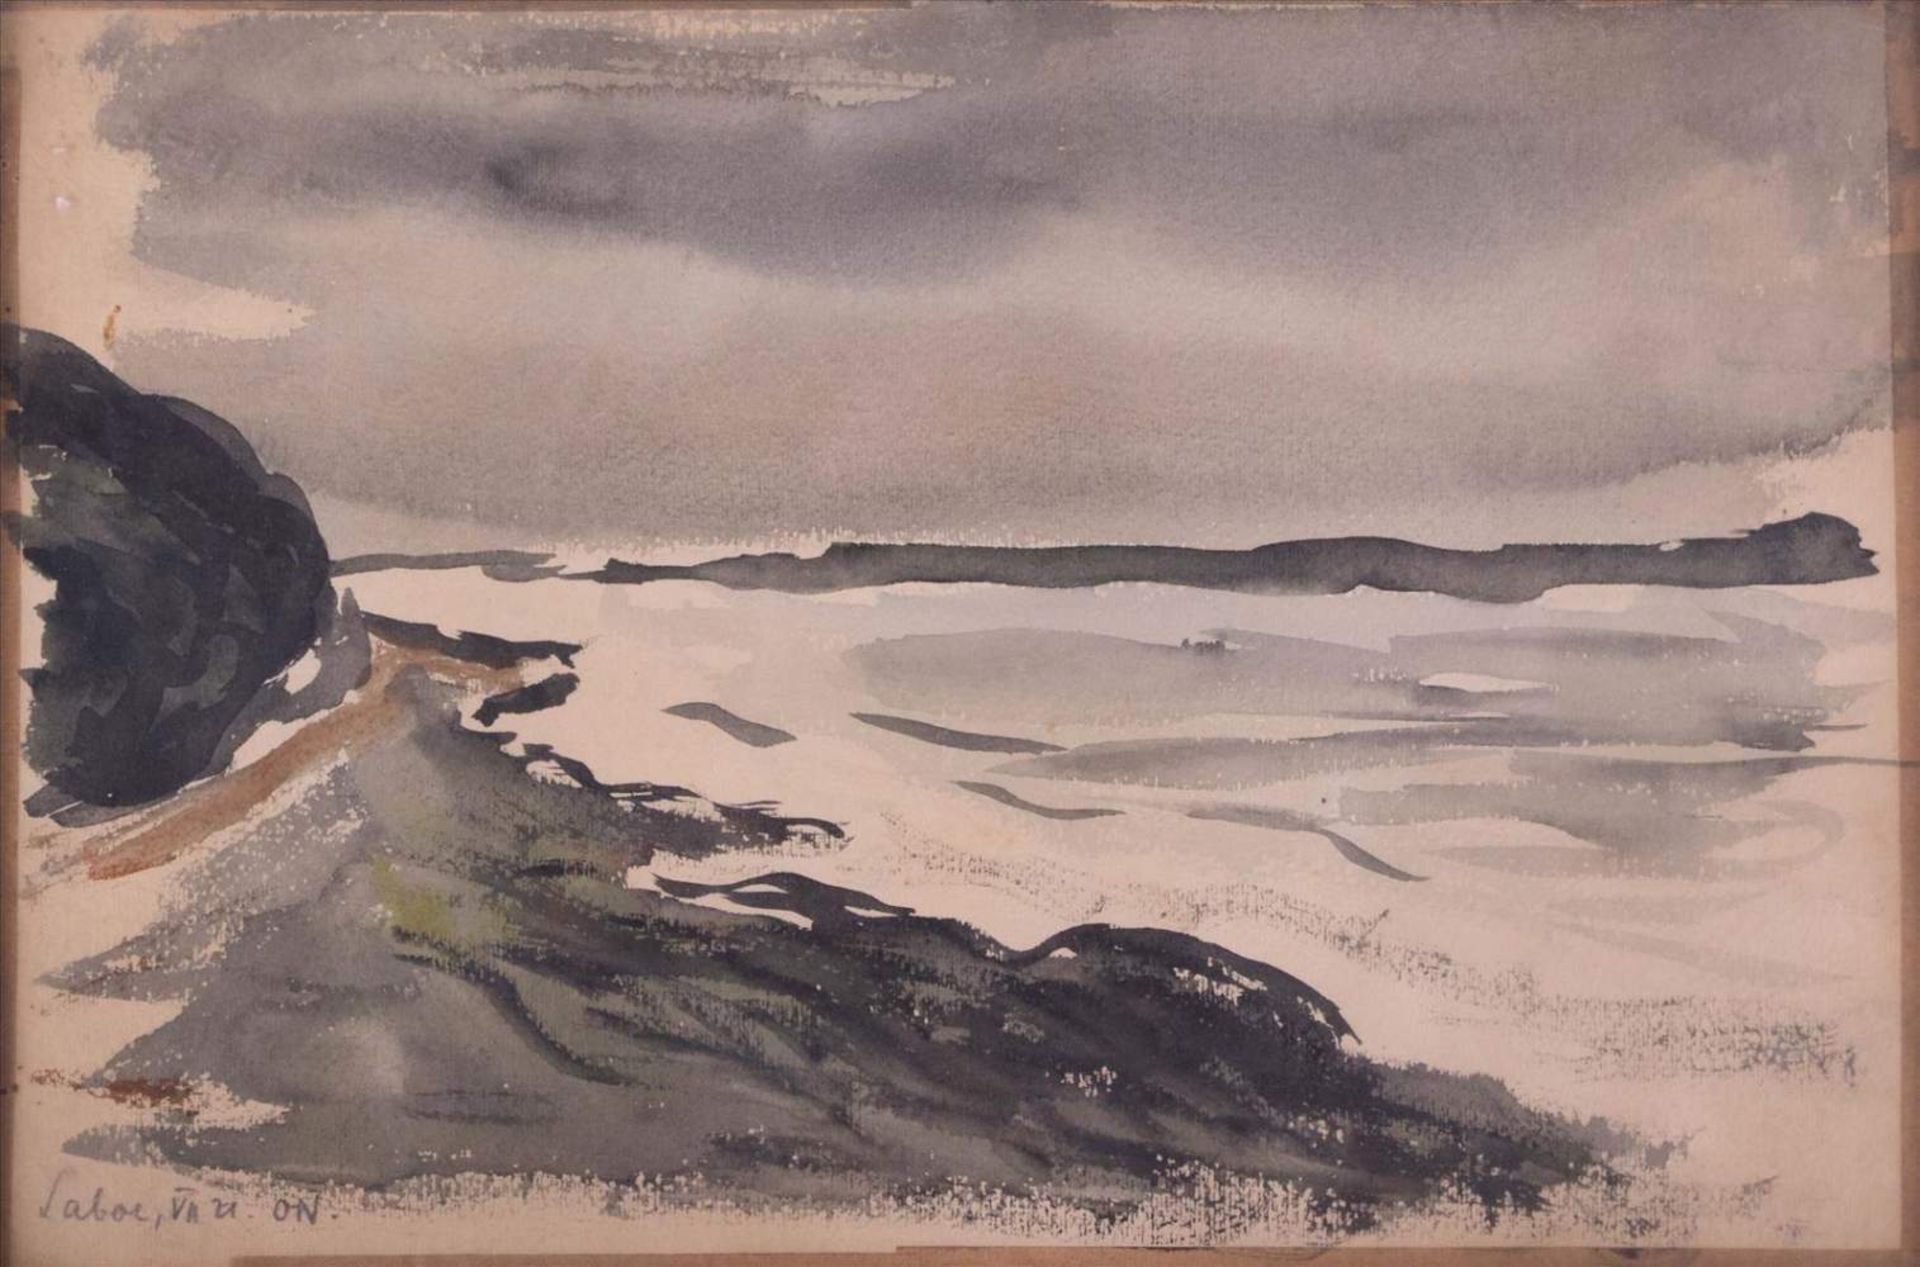 Otto NIEMEYER-HOLSTEIN (1896-1984)"Laboe"Zeichnung-Aquarell, 17 cm x 25,5 cm,links unten